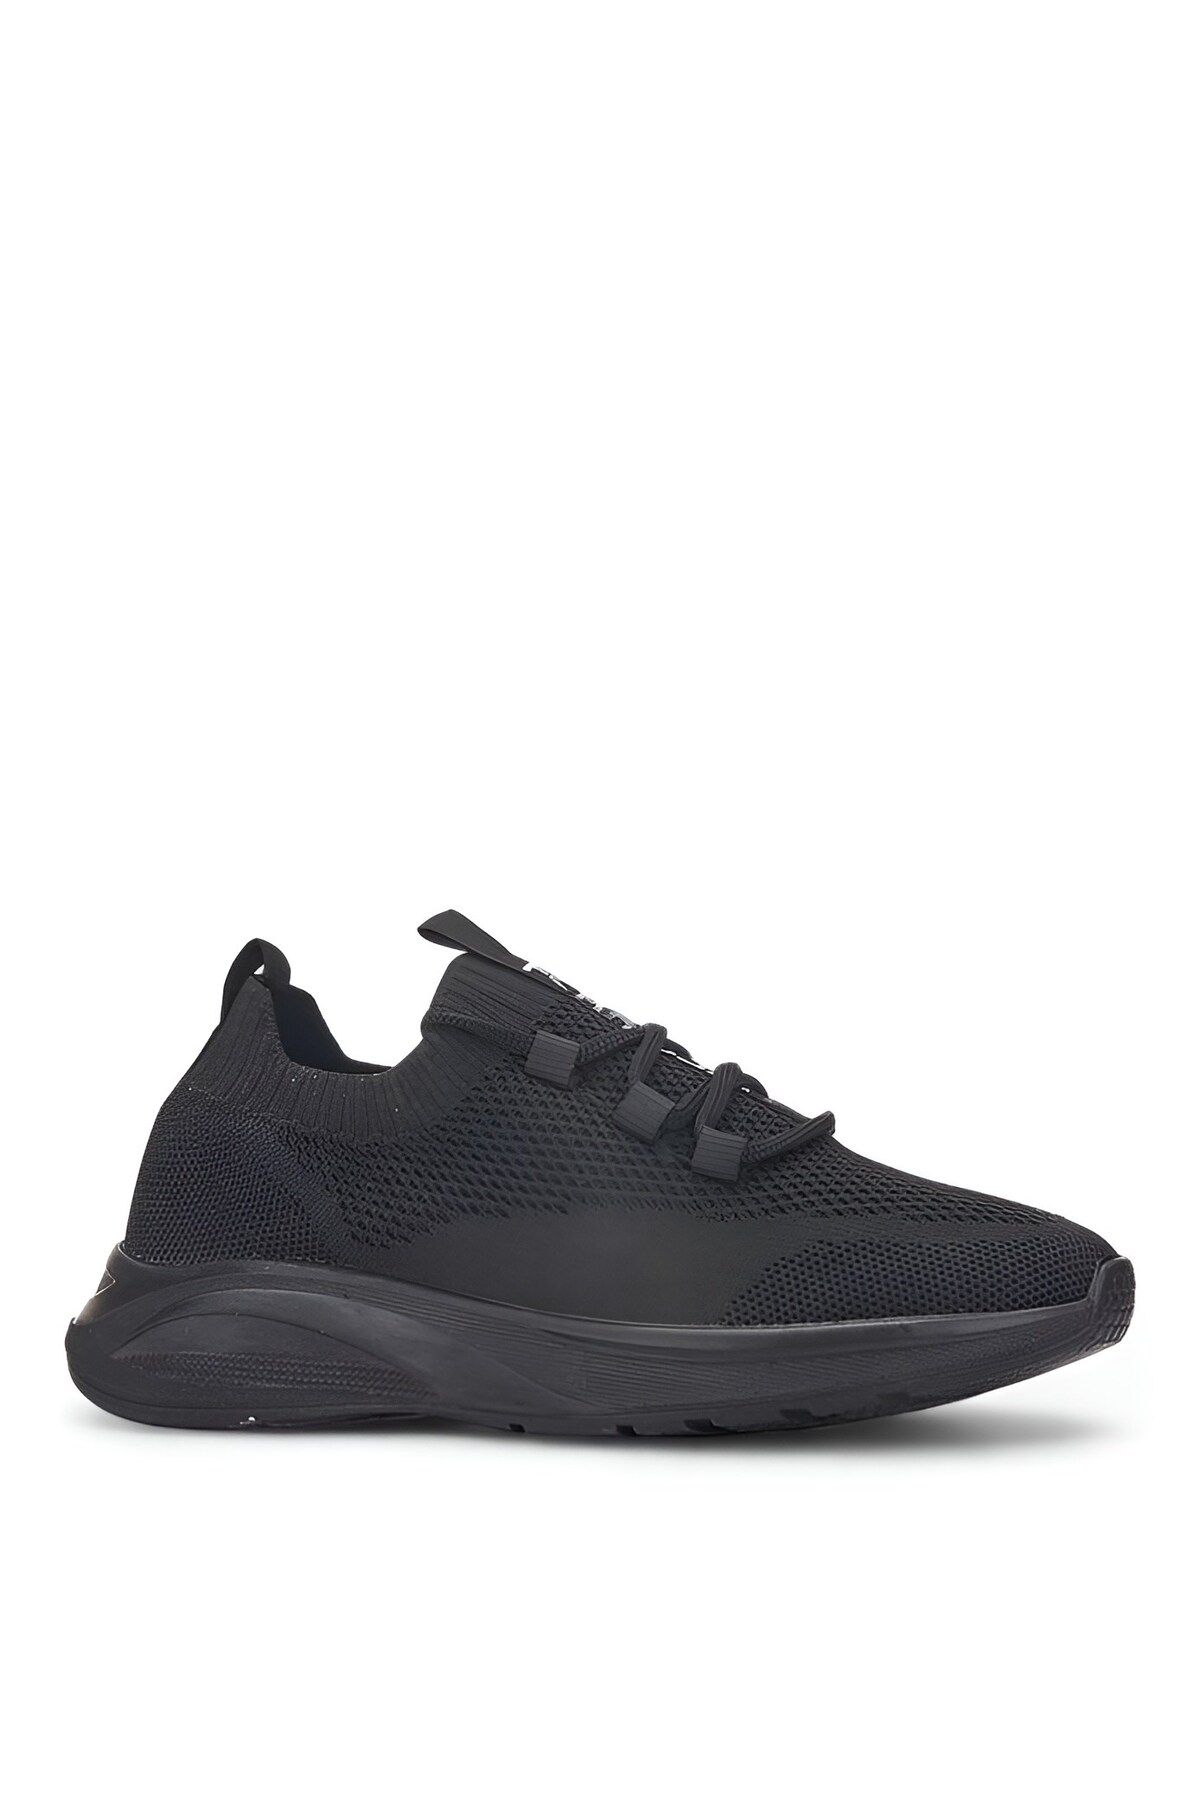 İmerShoes Günlük Kadın Siyah Siyah Triko Sneaker Bağcıklı Çorap Kalın Topuklu Oval Burunlu Spor Ayakkabı 625